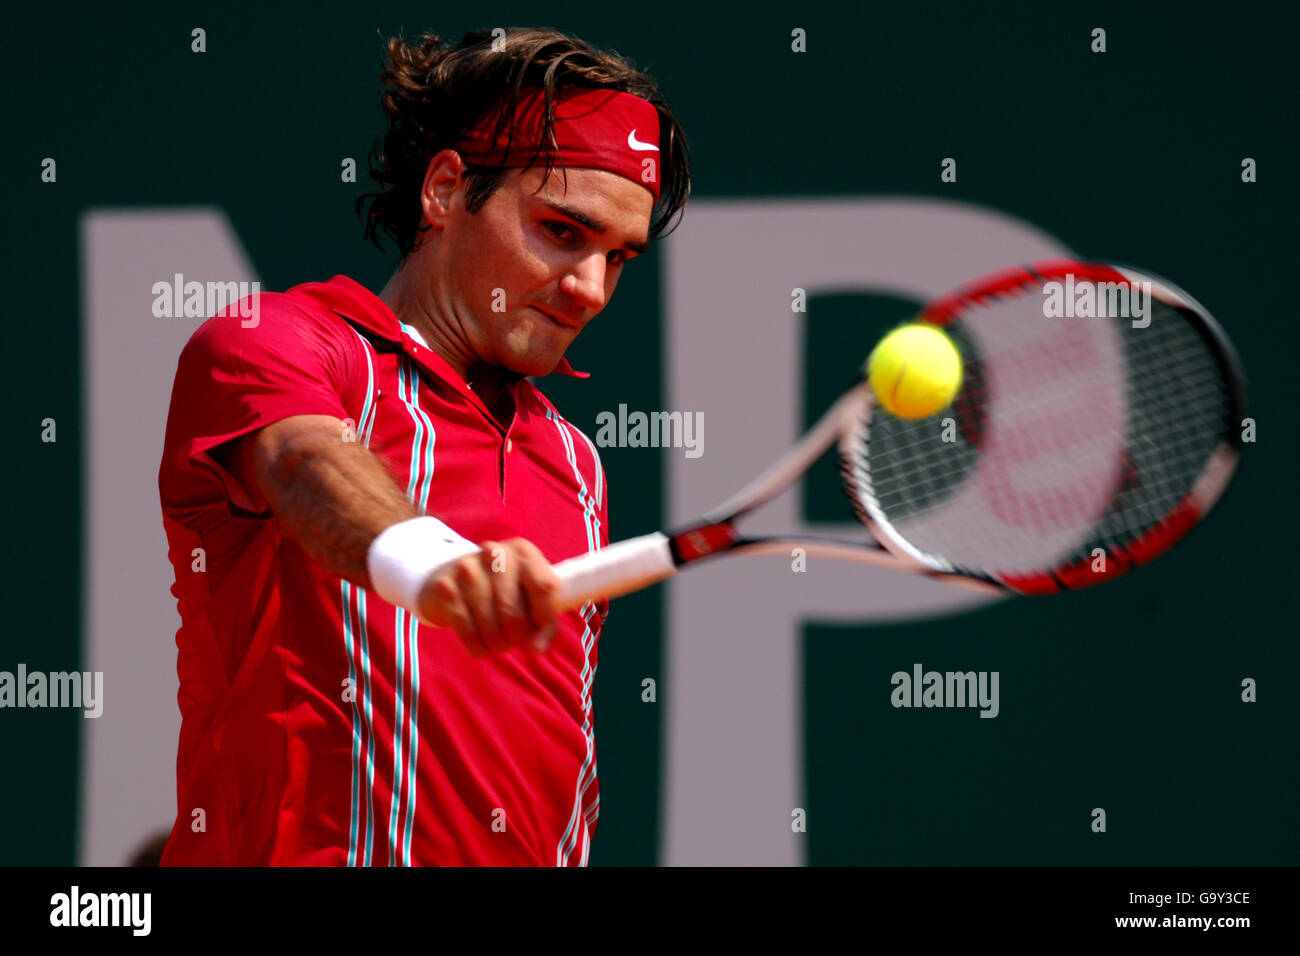 Tennis - ATP Masters Series - Monte Carlo - Halbfinale - Roger Federer gegen Juan Carlos Ferrero. Roger Federer, Schweiz Stockfoto